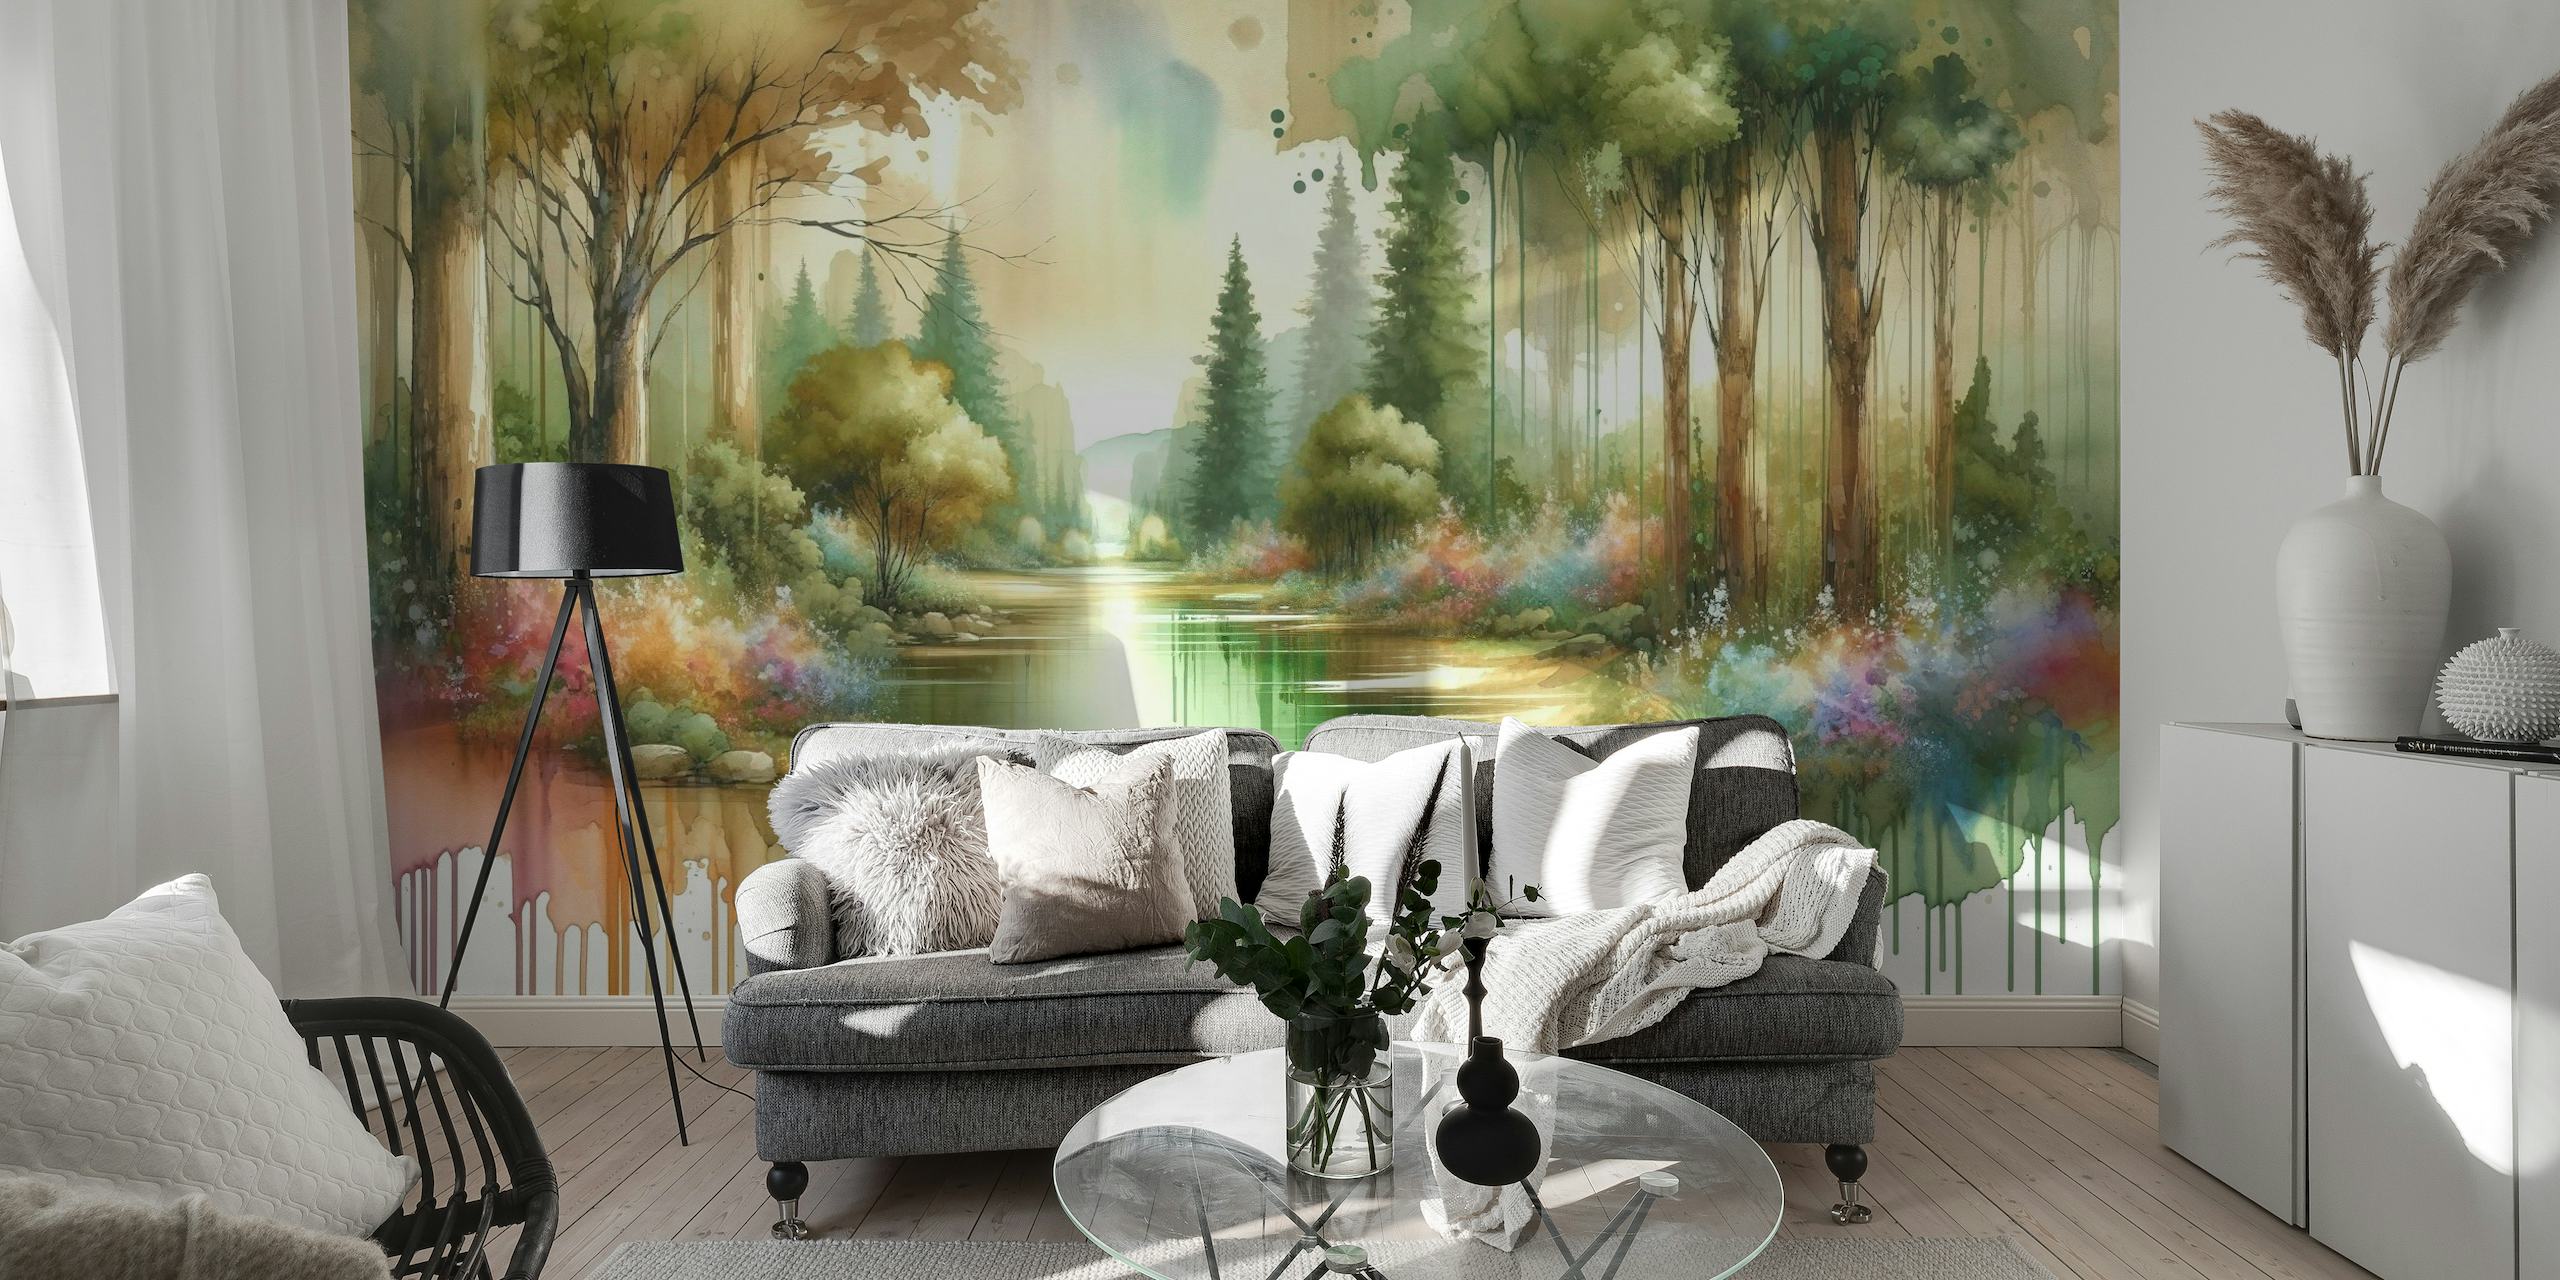 Scena da sogno della foresta ad acquerello con un lago riflettente e flora colorata